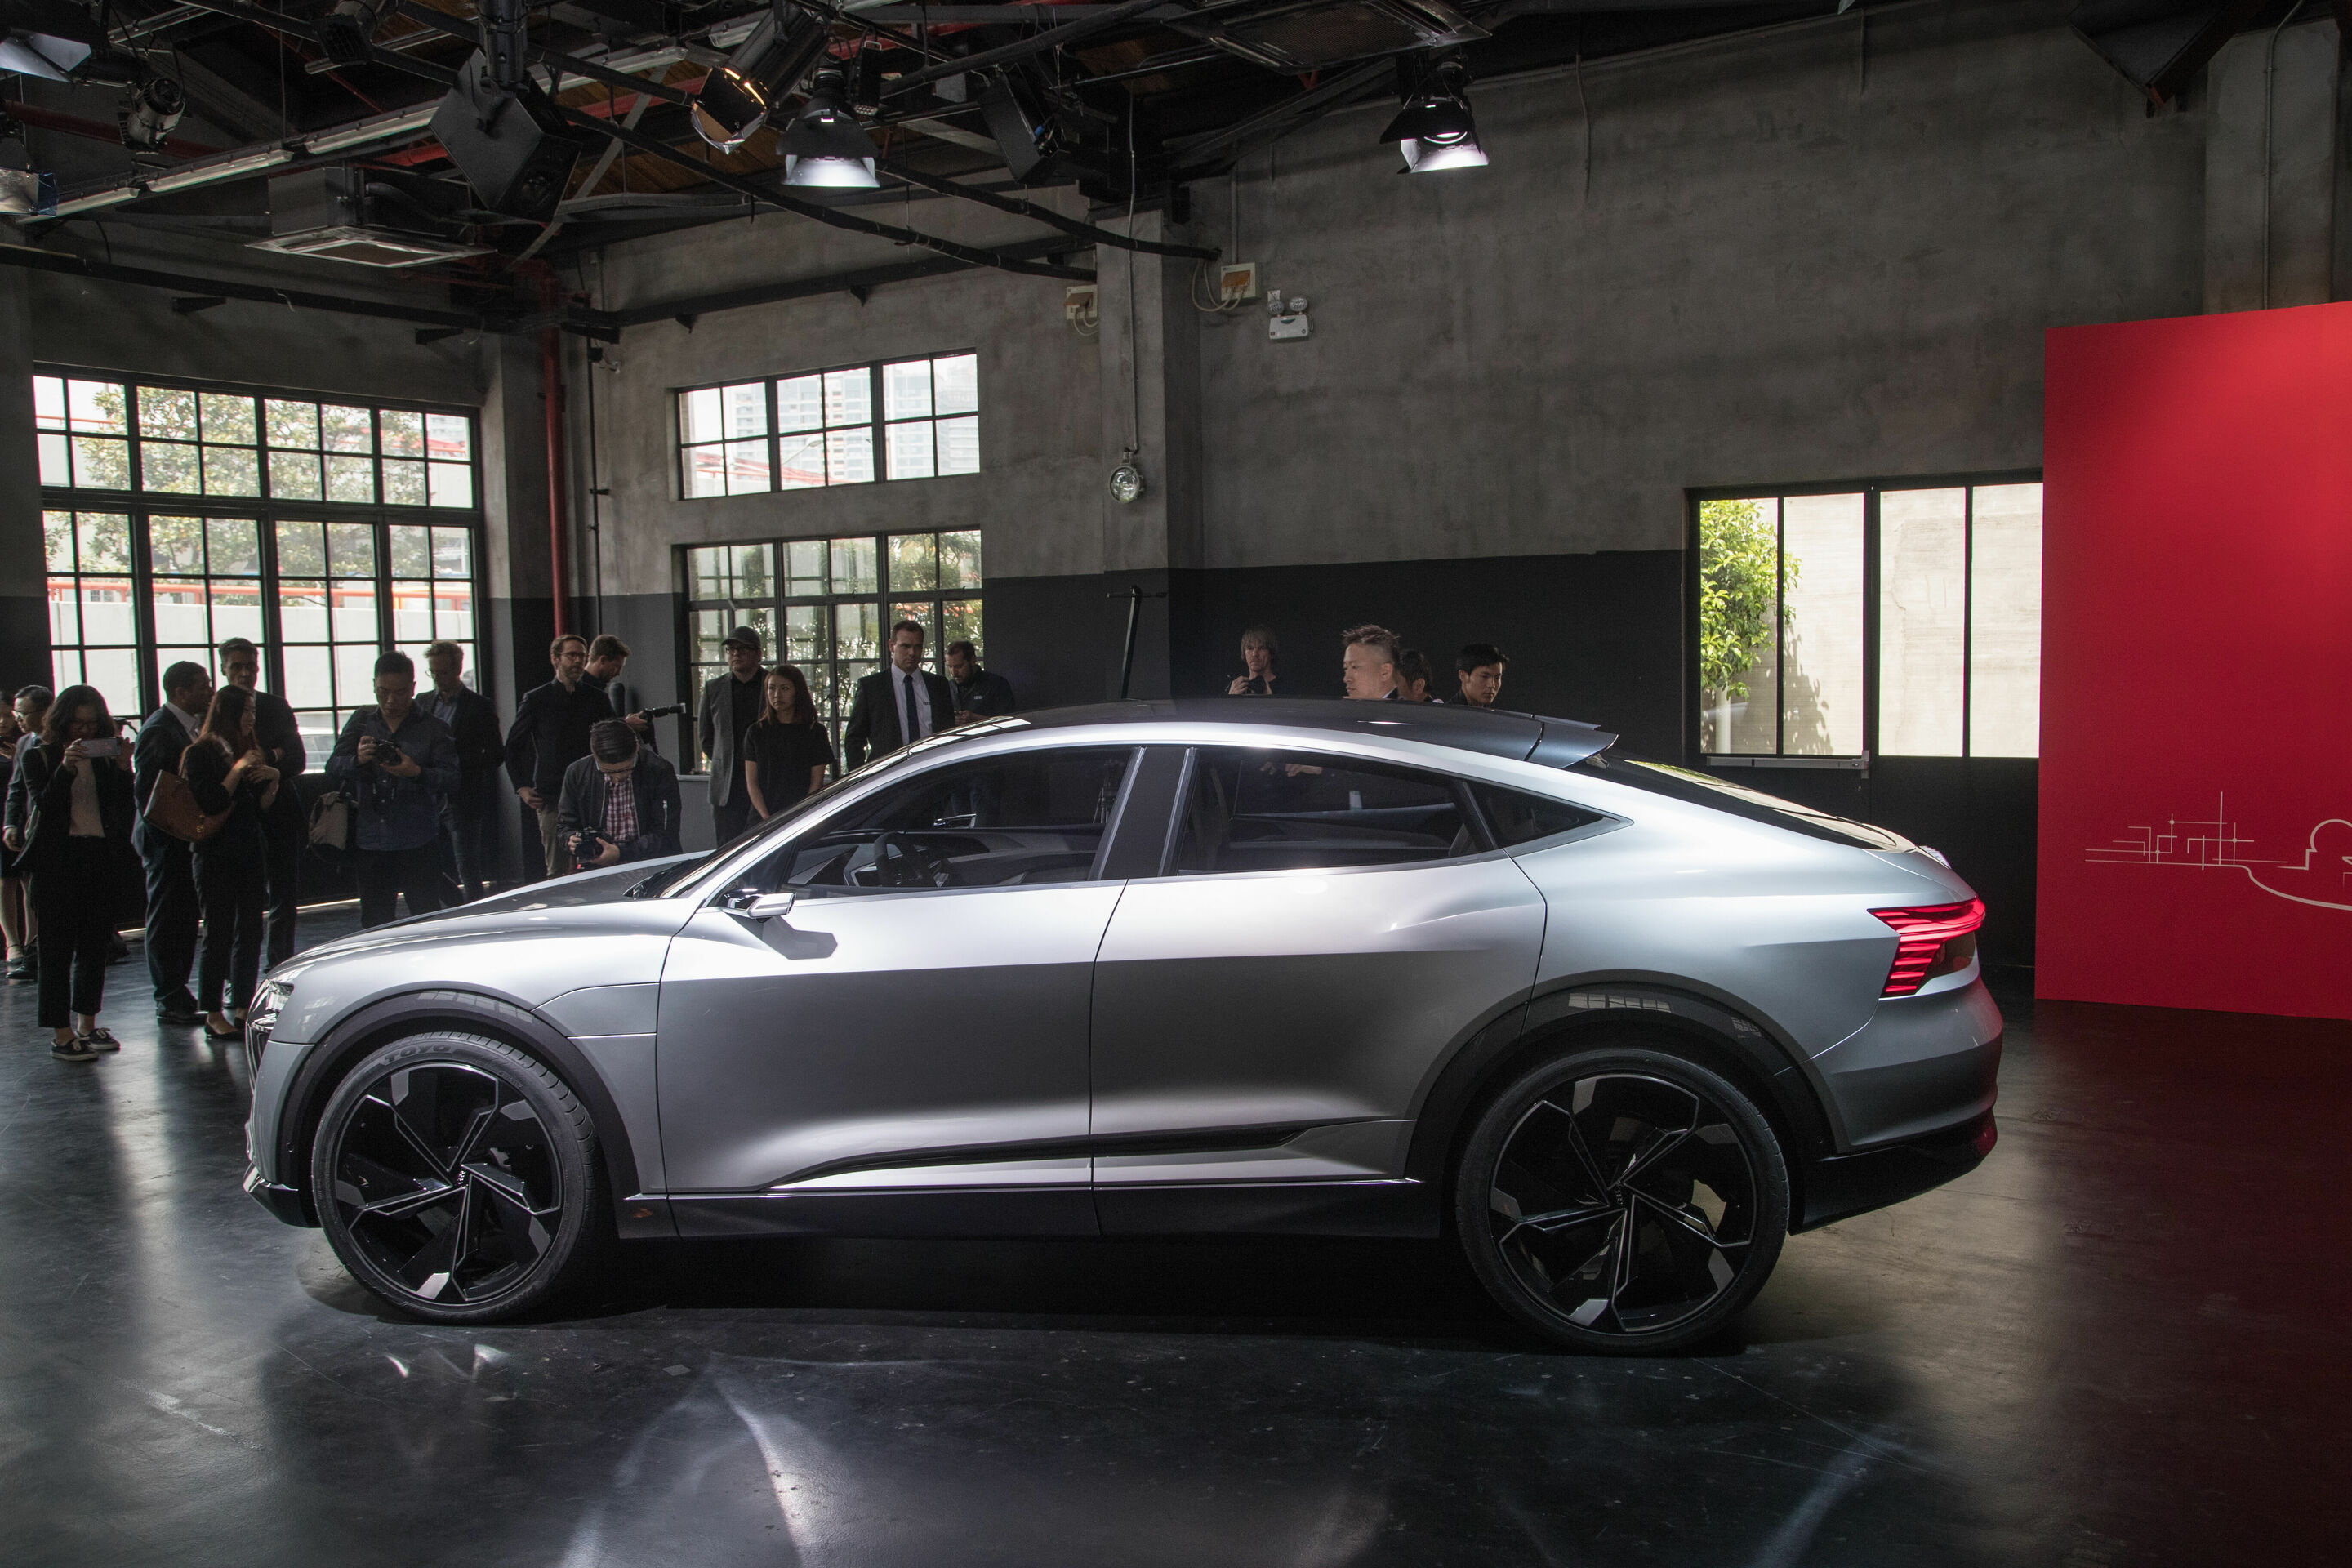 Audi e-tron Sportback concept Weltpremiere Auto Shanghai 2017